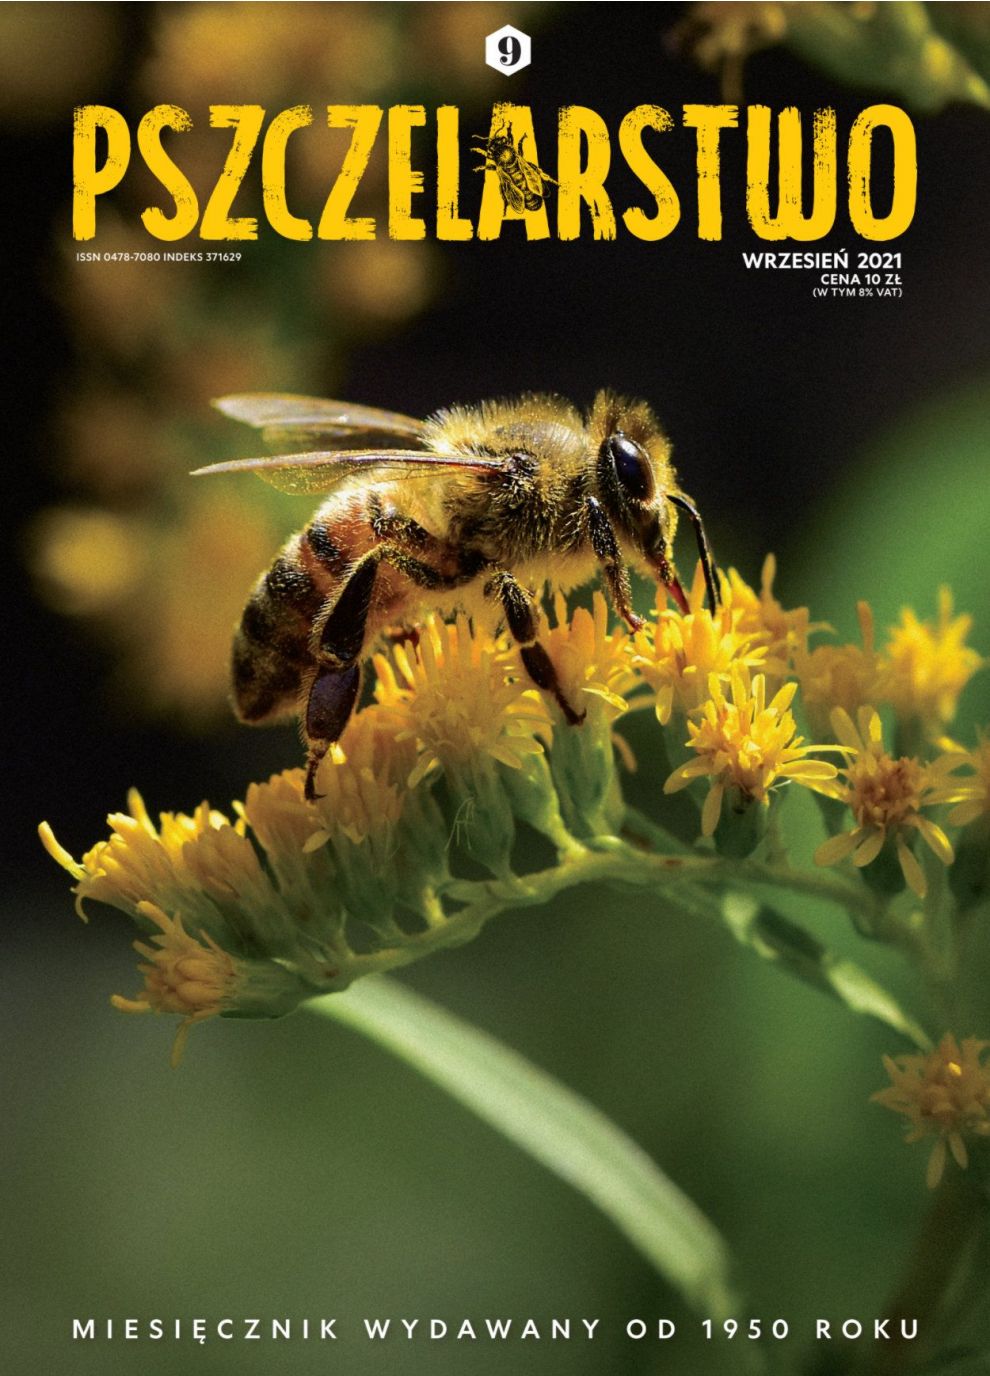 Miesięcznik Pszczelarstwo - Wrzesień 2021